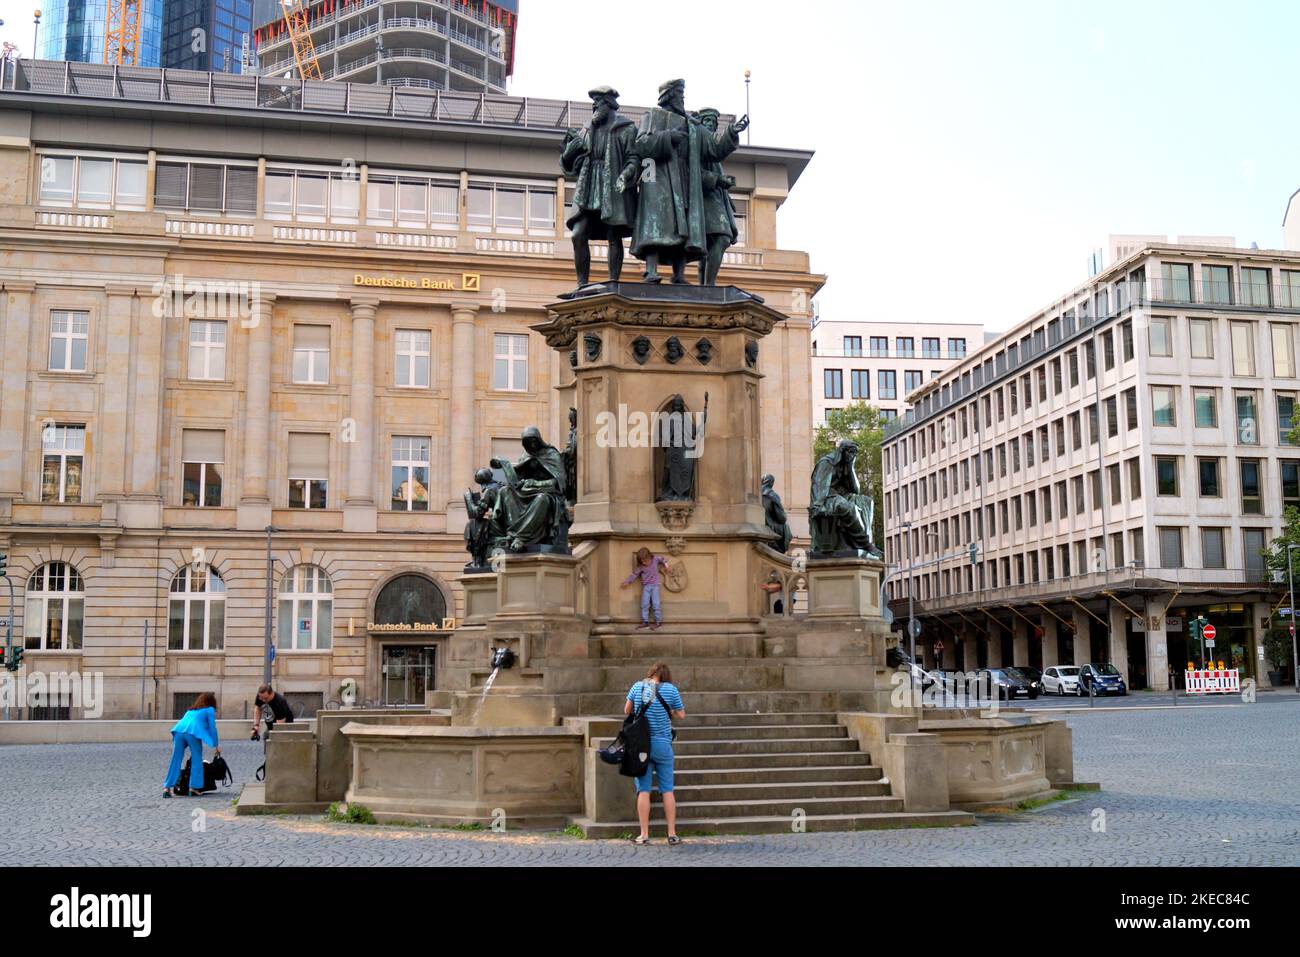 Johannes Gutenberg Monument, inaugurated in 1858, memorial and fountain on the Rossmarkt, sculptural work by Eduard Schmidt von der Launitz, Frankfurt Stock Photo